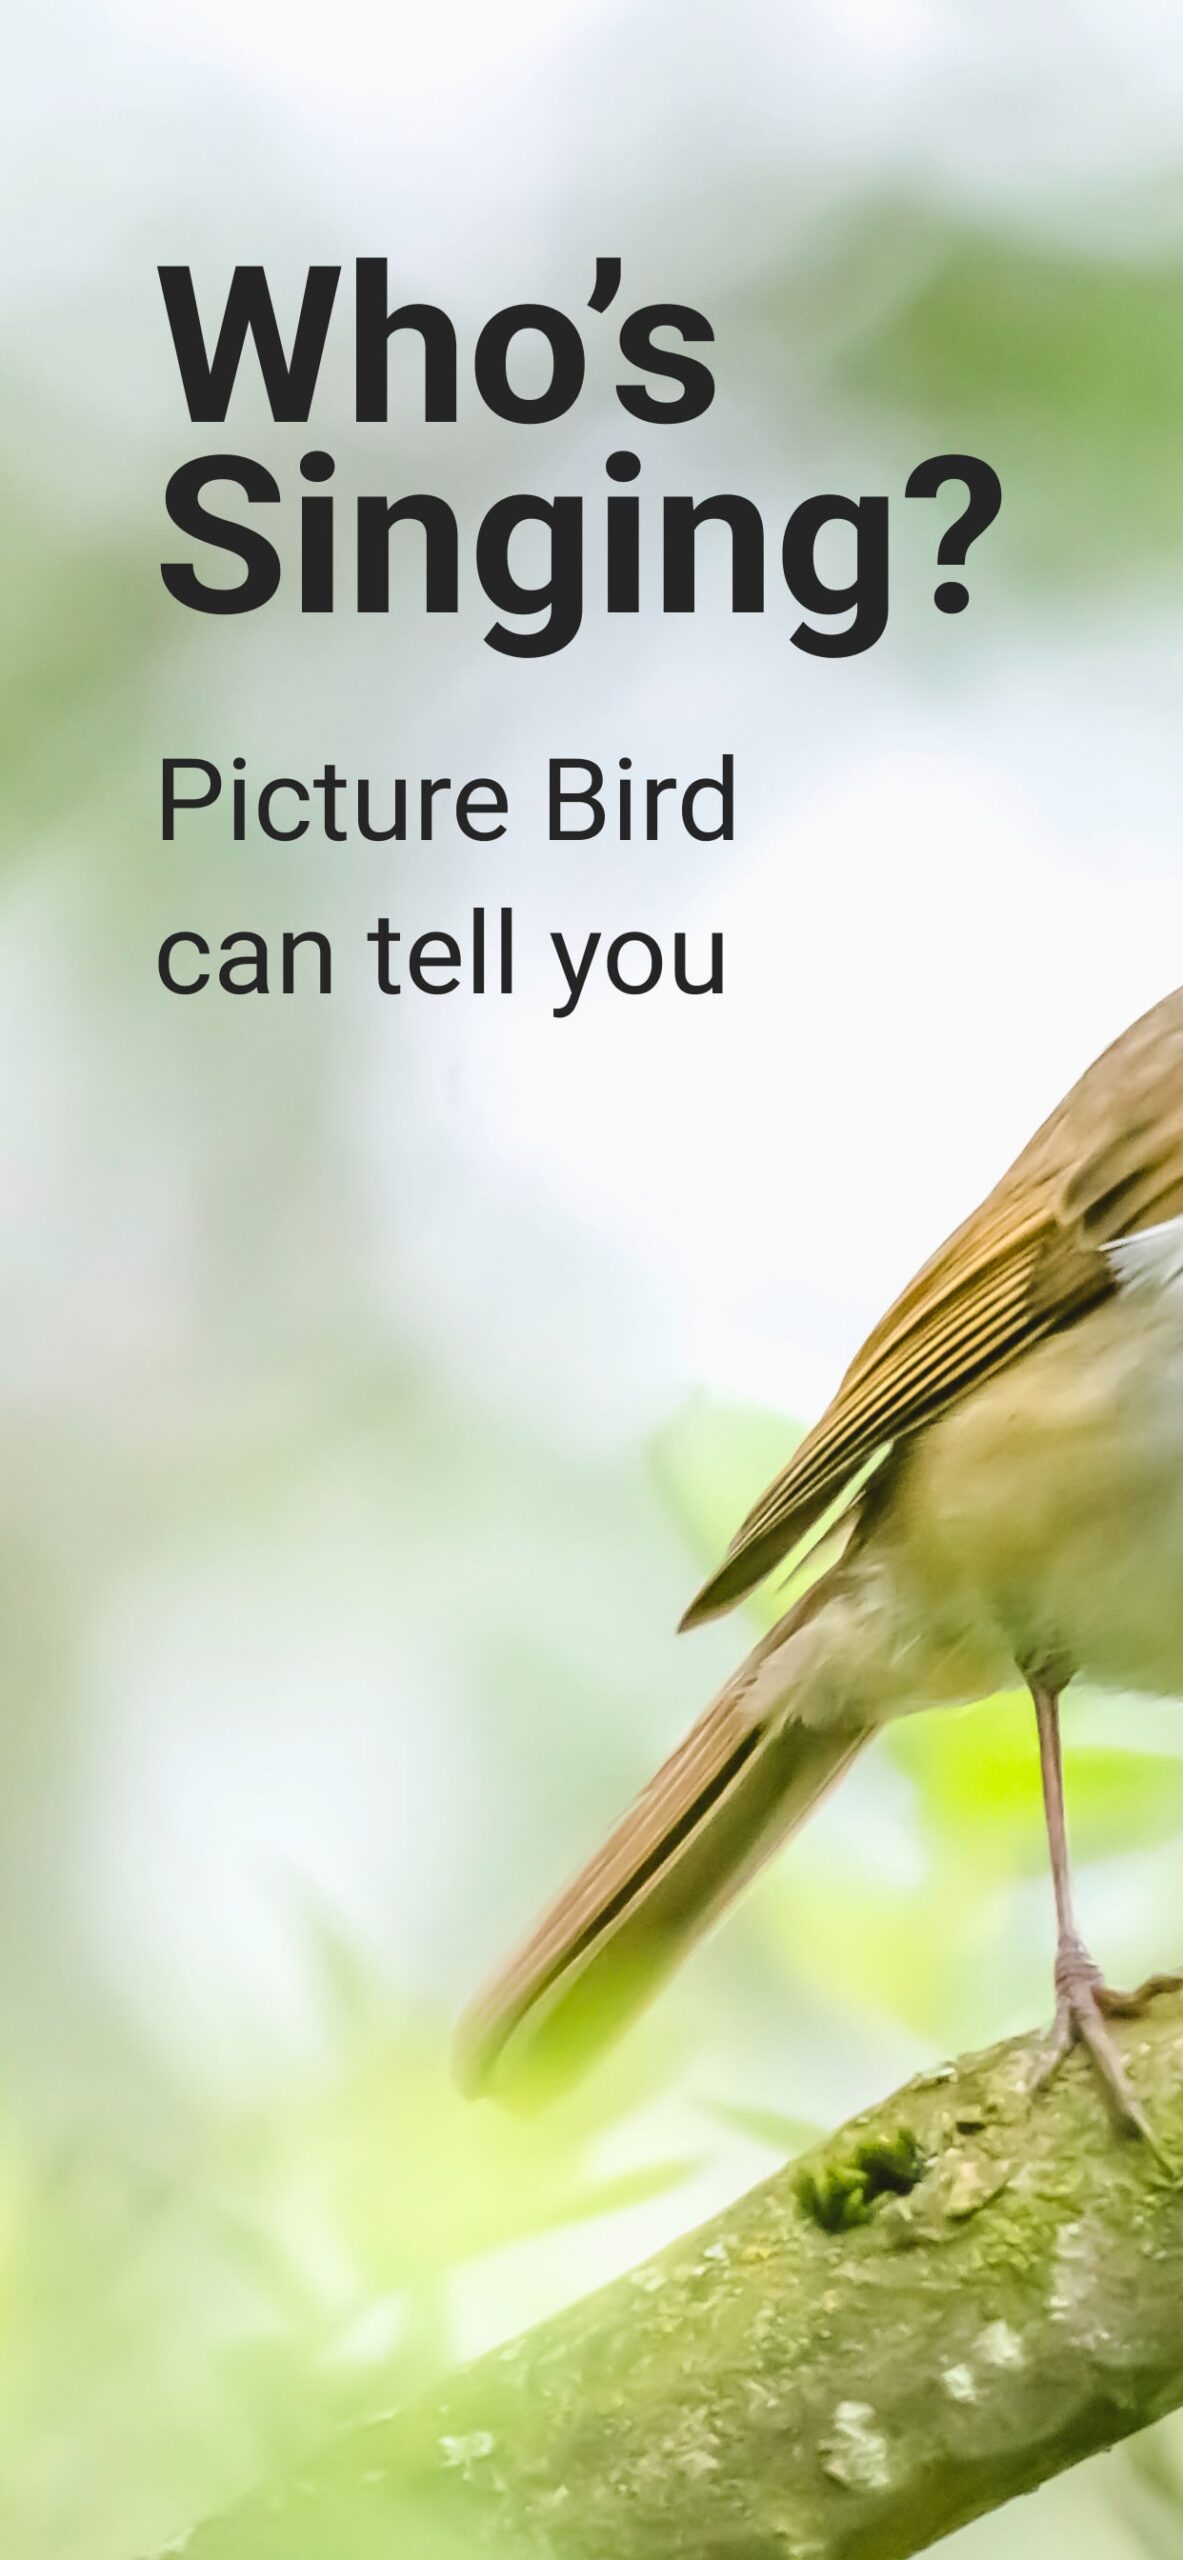 Picture-Bird-Bird-Identifier-1-scaled.jpg